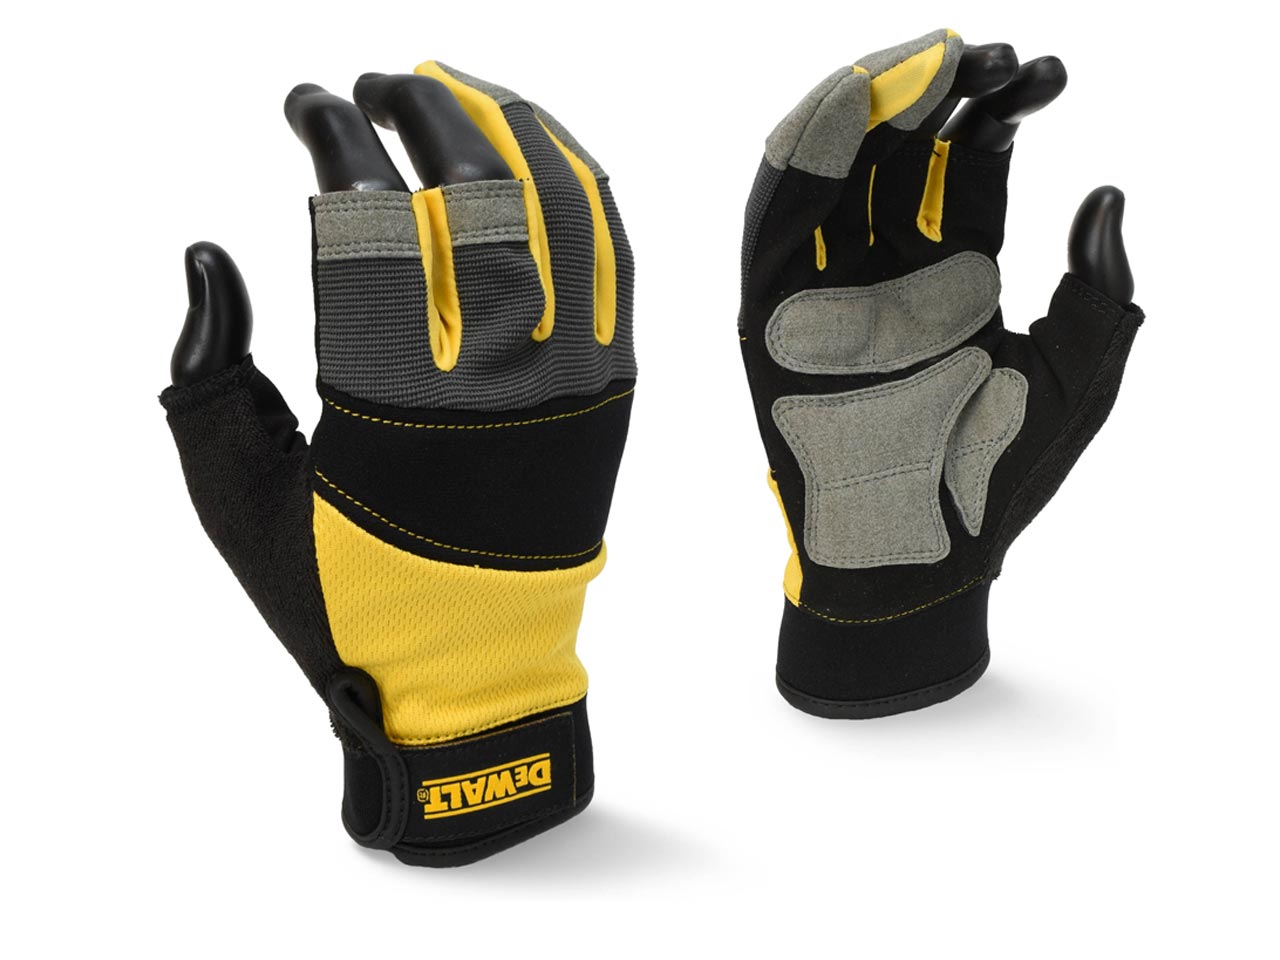 DeWalt DPG215L EU Performance Work Gloves Black Large